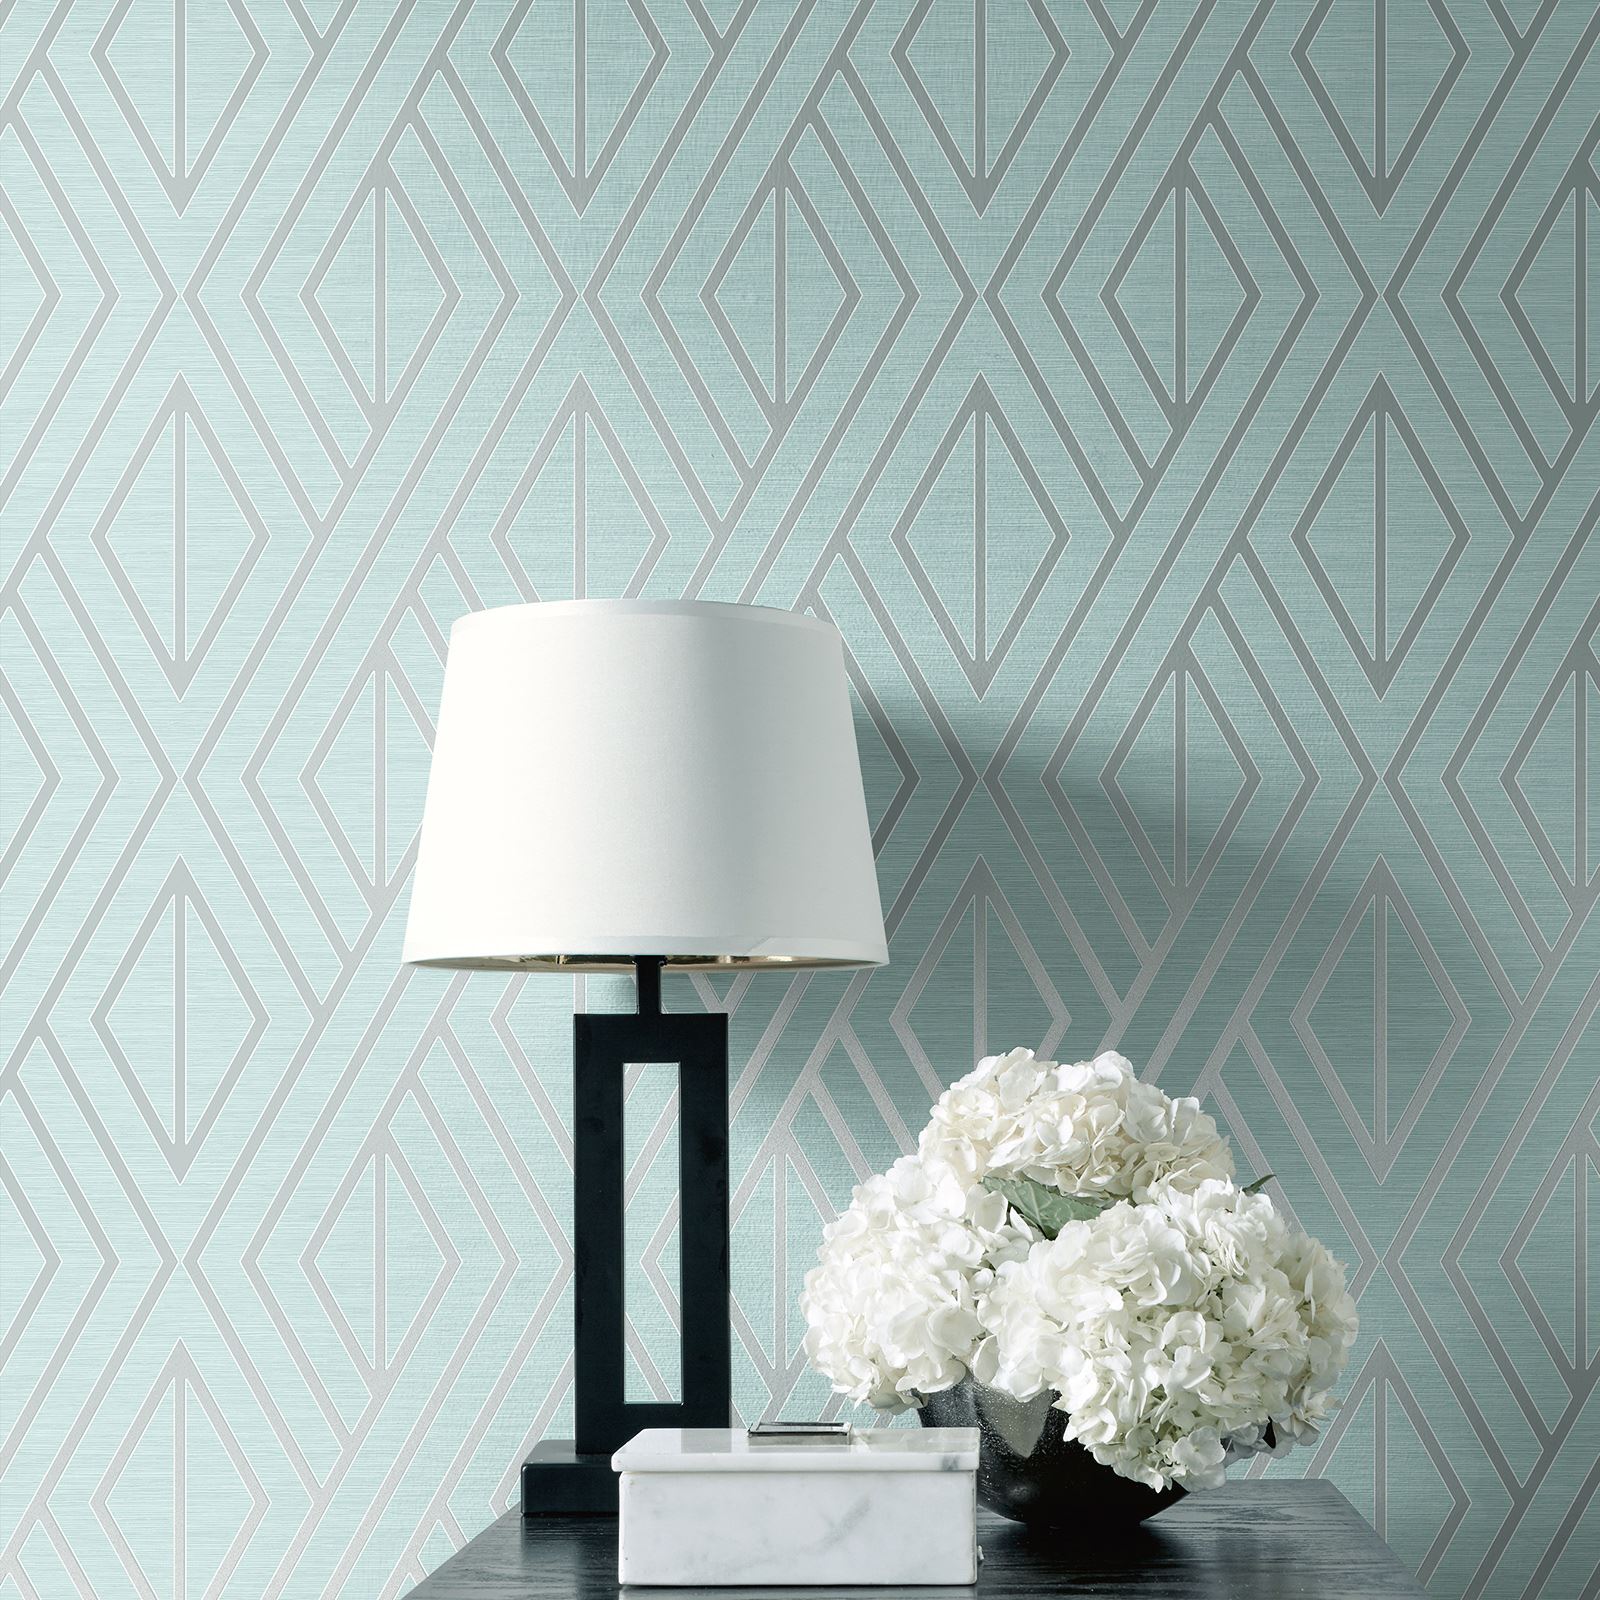 Pear Tree Geometric Diamond Metallic Textured Wallpaper - Uk30507 - HD Wallpaper 